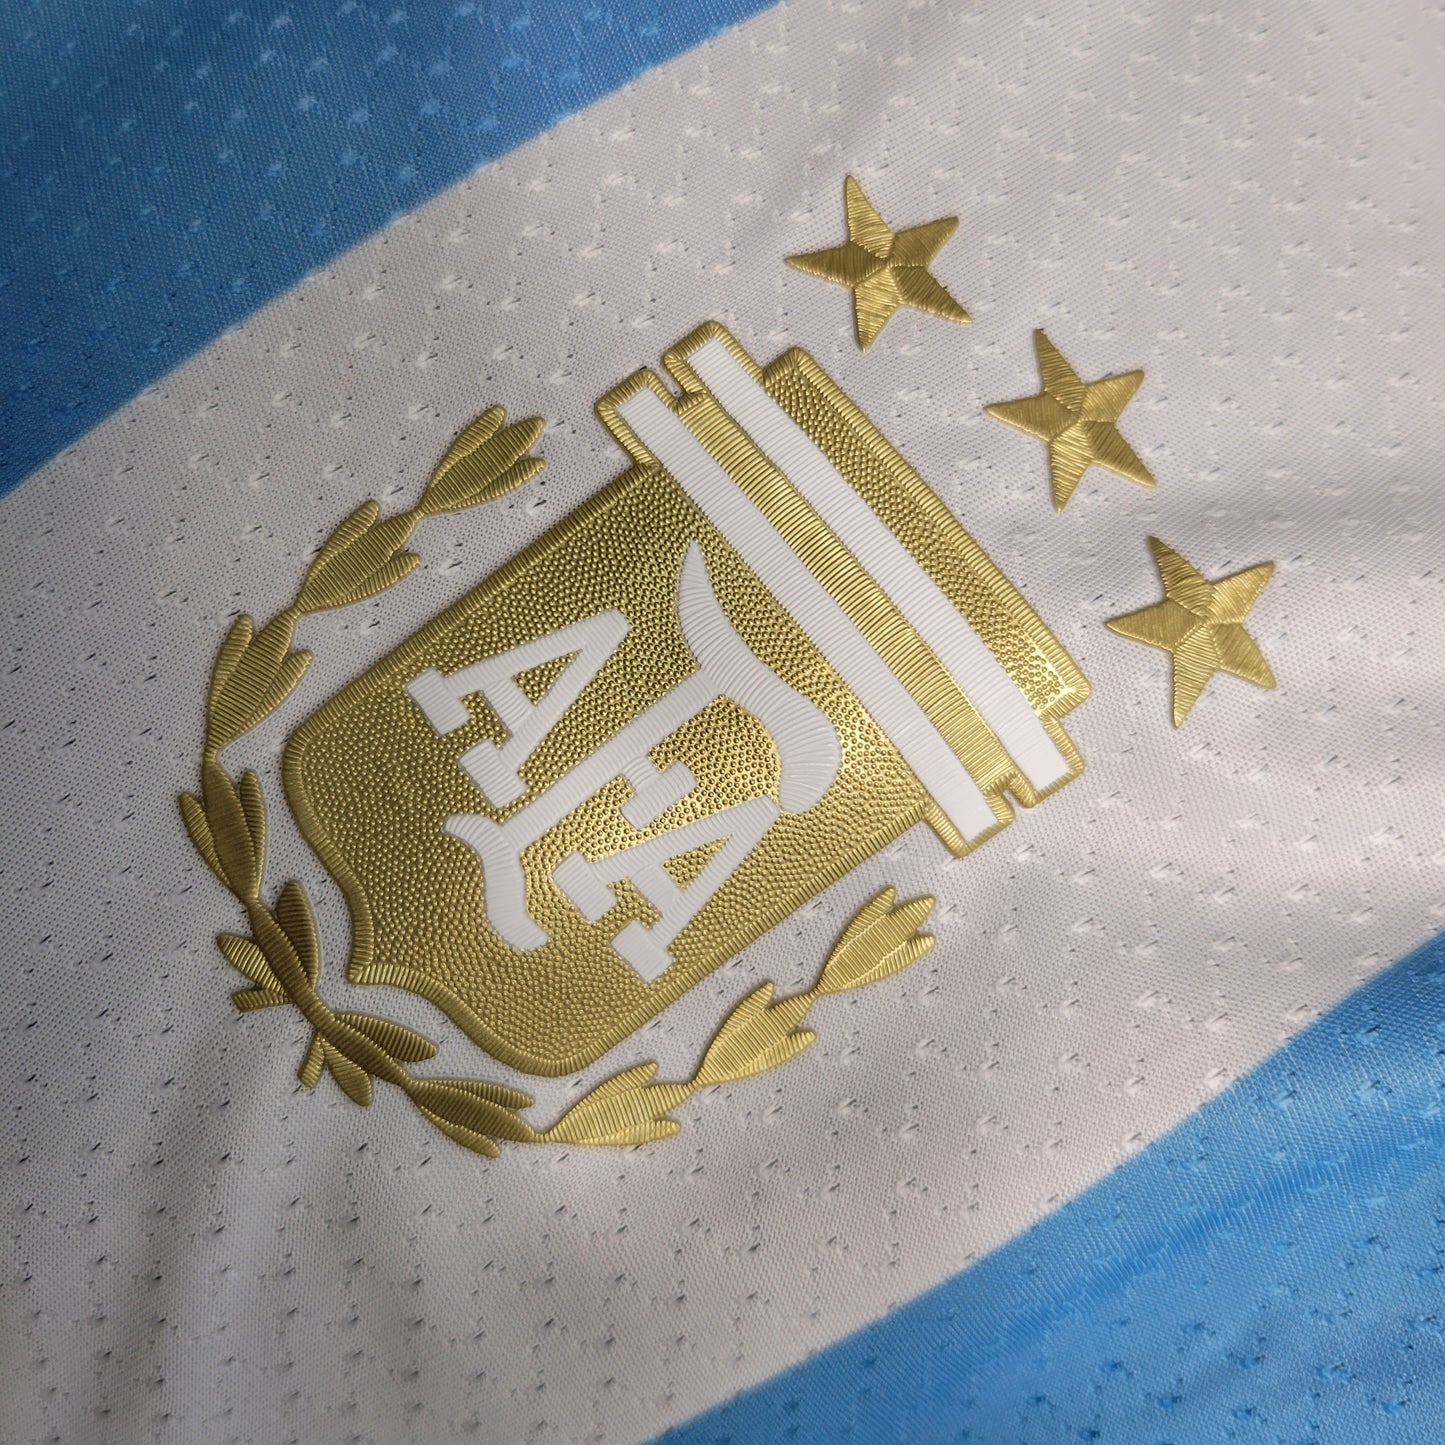 Camisa Jogador Argentina Home 23/24